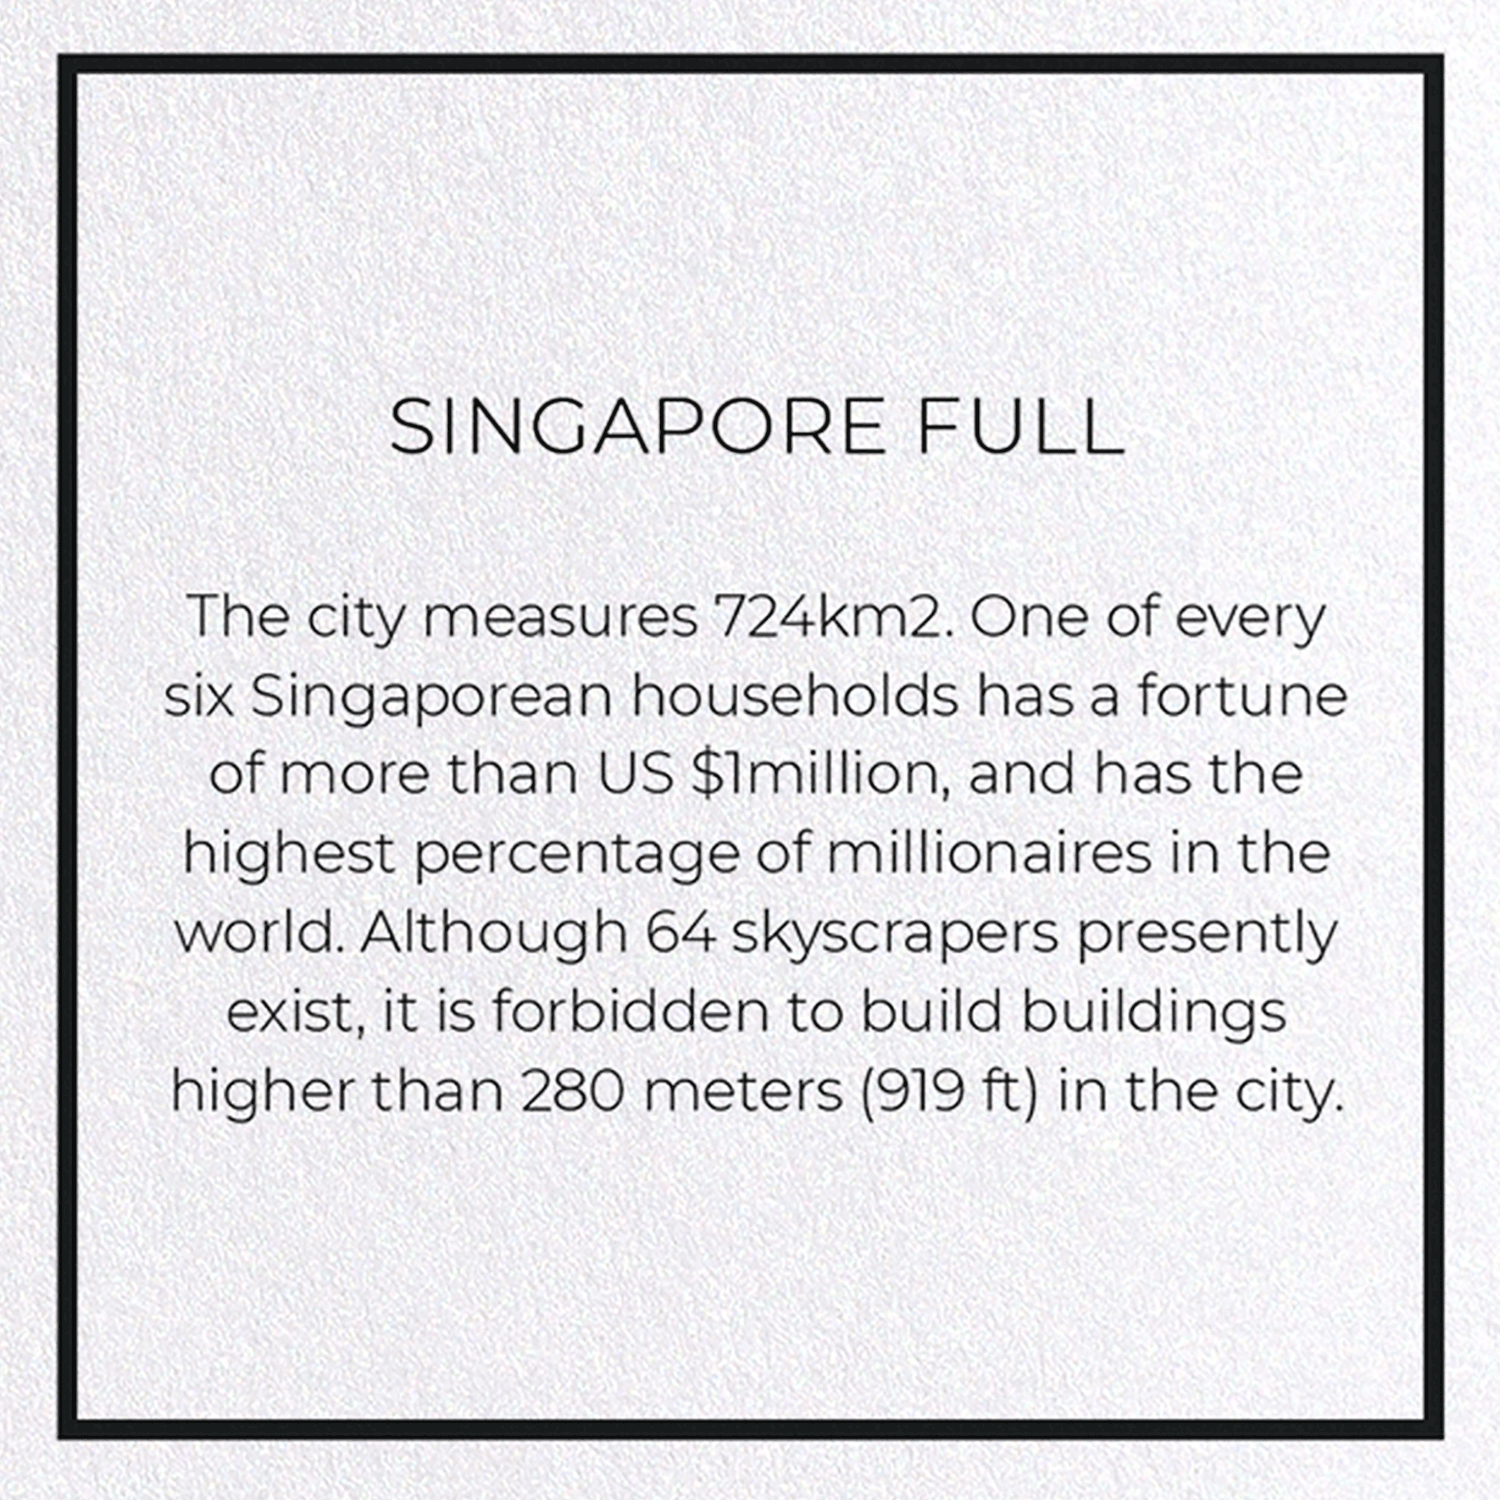 SINGAPORE FULL